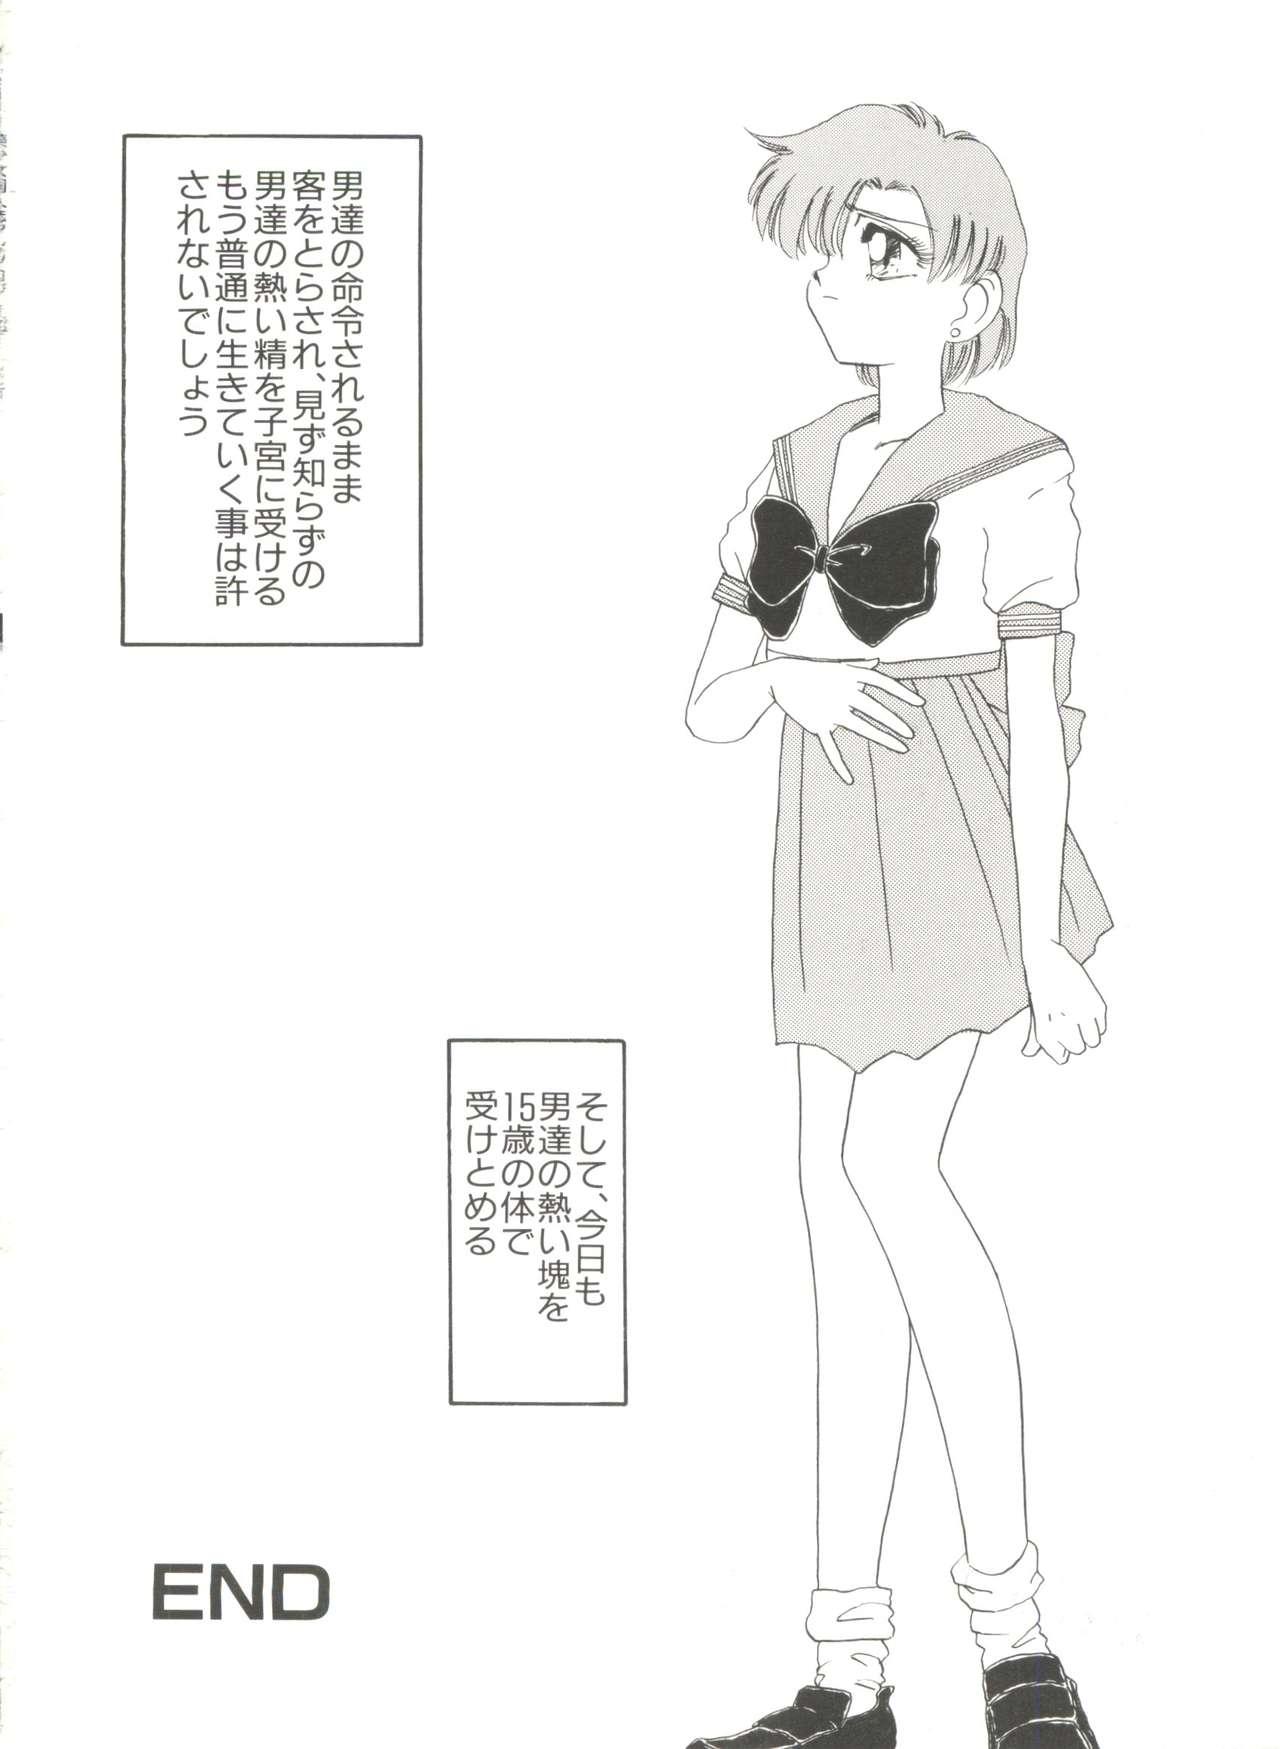 Bishoujo Doujinshi Anthology 10 - Moon Paradise 6 Tsuki no Rakuen 100